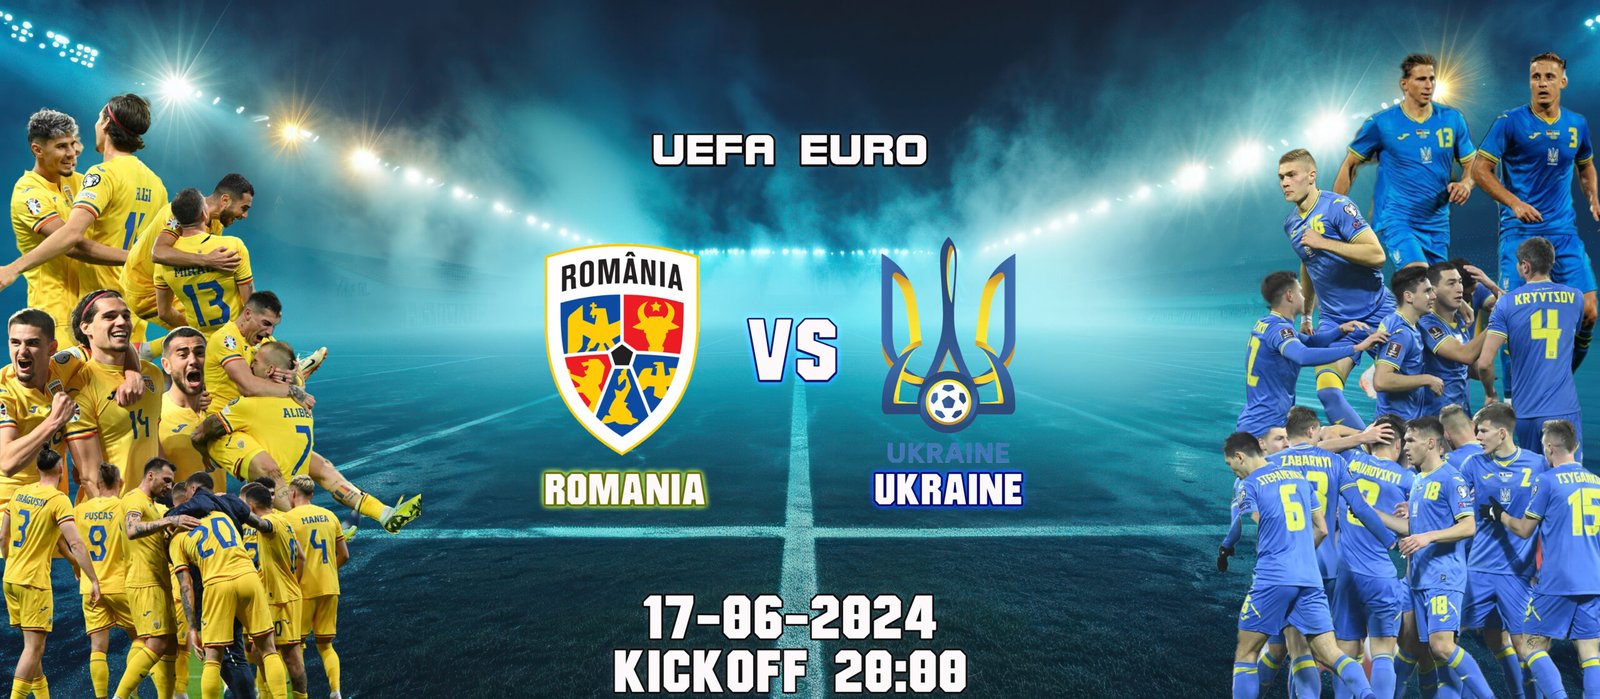 Rumania VS Ukrania